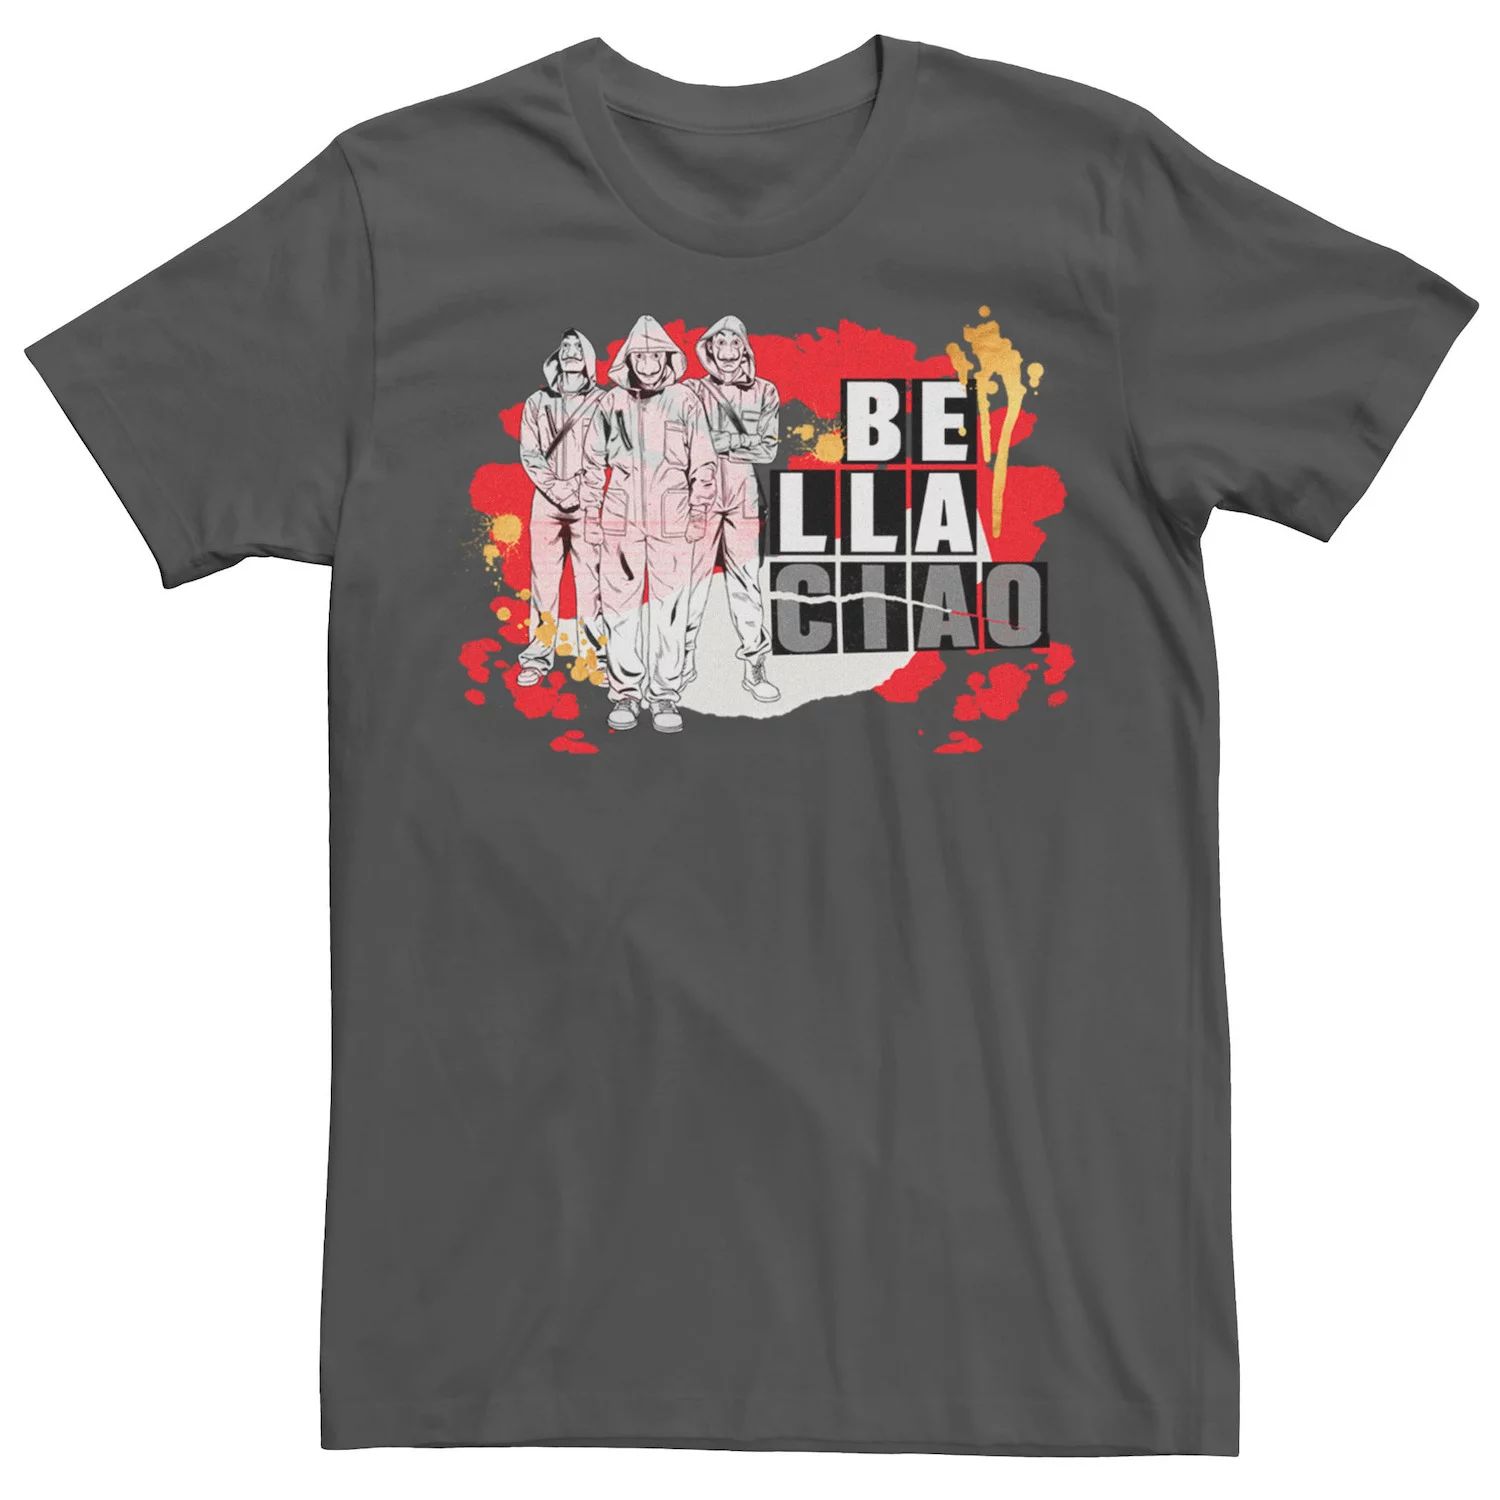 Мужская футболка Netflix La Casa De Papel Bella Ciao с брызгами краски Licensed Character мужская футболка с коротким рукавом la casa de papel bella ciao warped mask fifth sun белый